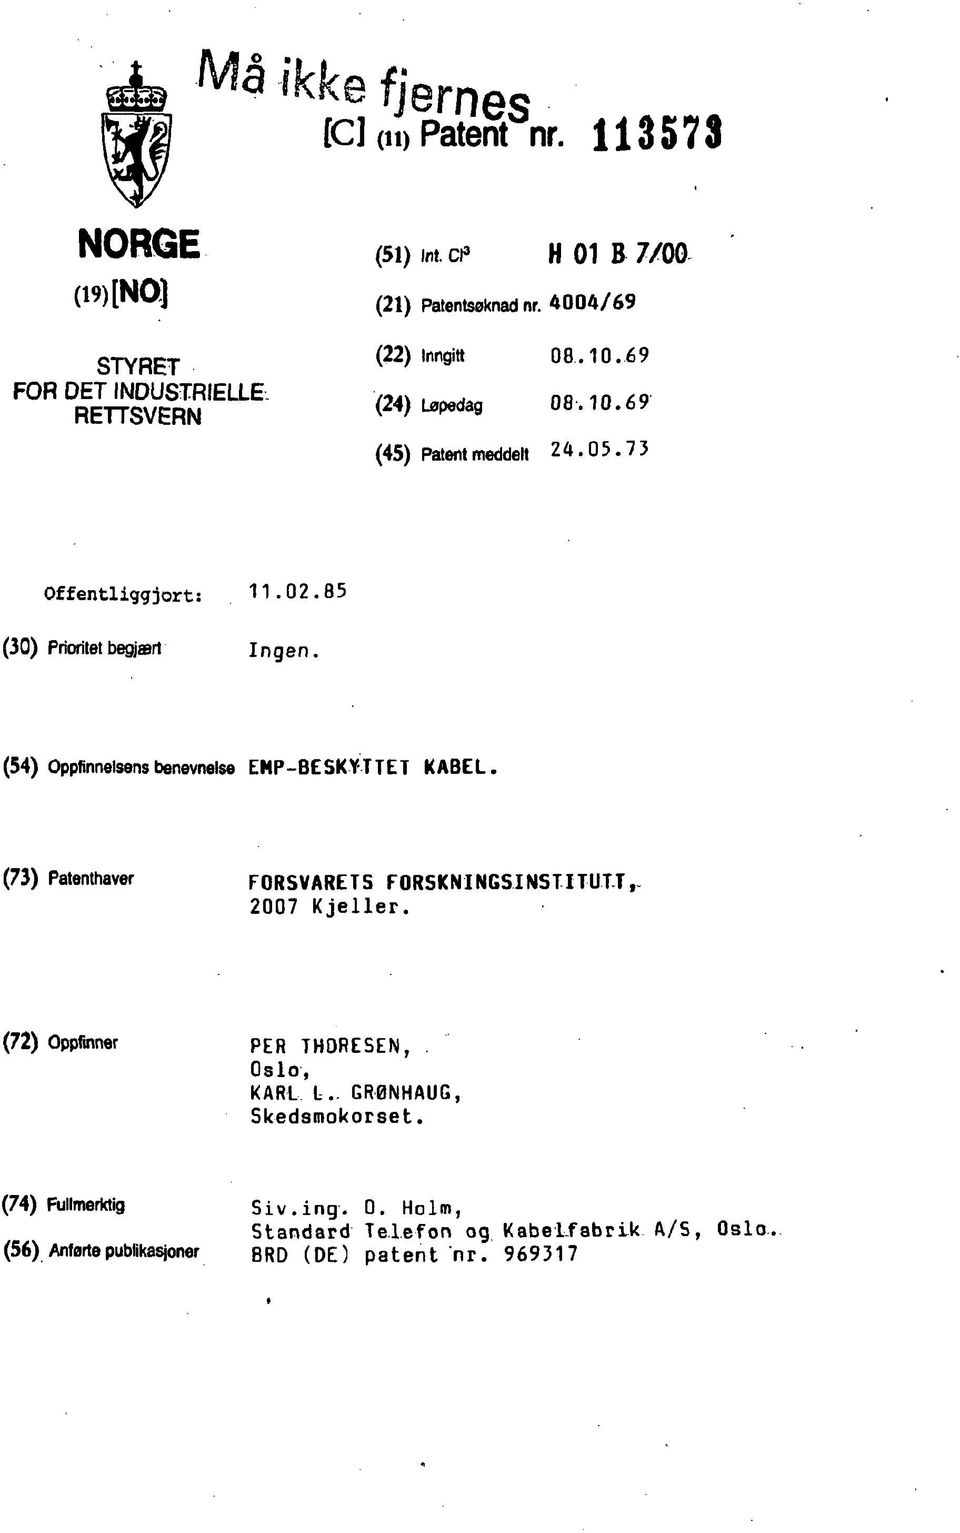 (54) Oppfinnelsensbenevnelse EMP-BESKYTTET KABEL. (73) Patenthaver FORSVARETS F 0 RS K NIN GSI NS TI TUTT 2007 Kjeller.